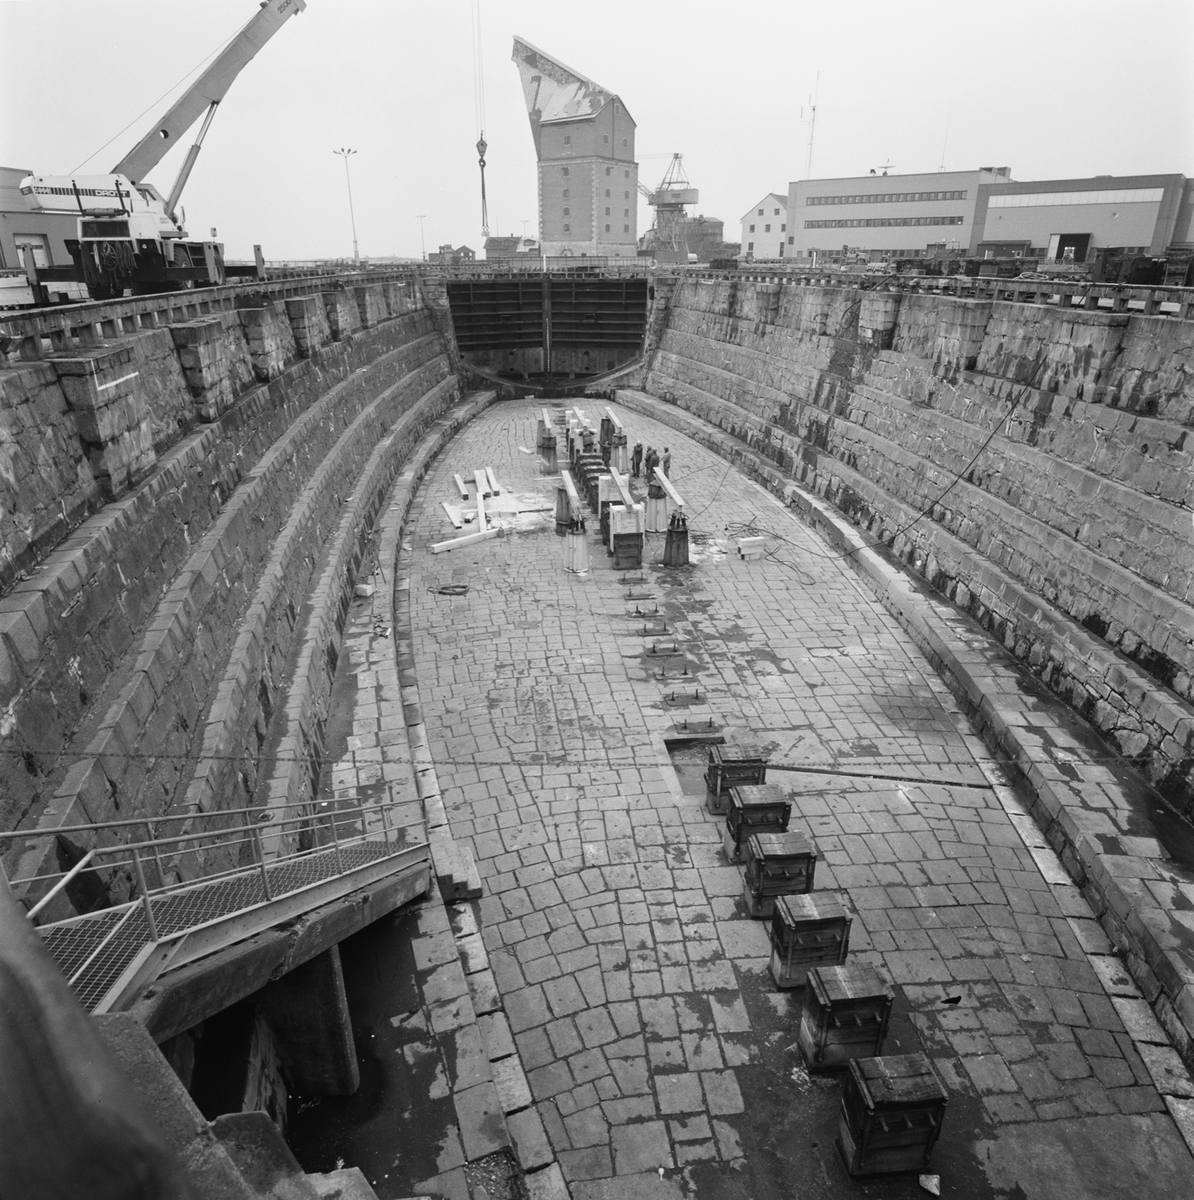 Övrigt: Foto datum:14/1 1988
Byggnader och kranar
Västra kölhalningsbron